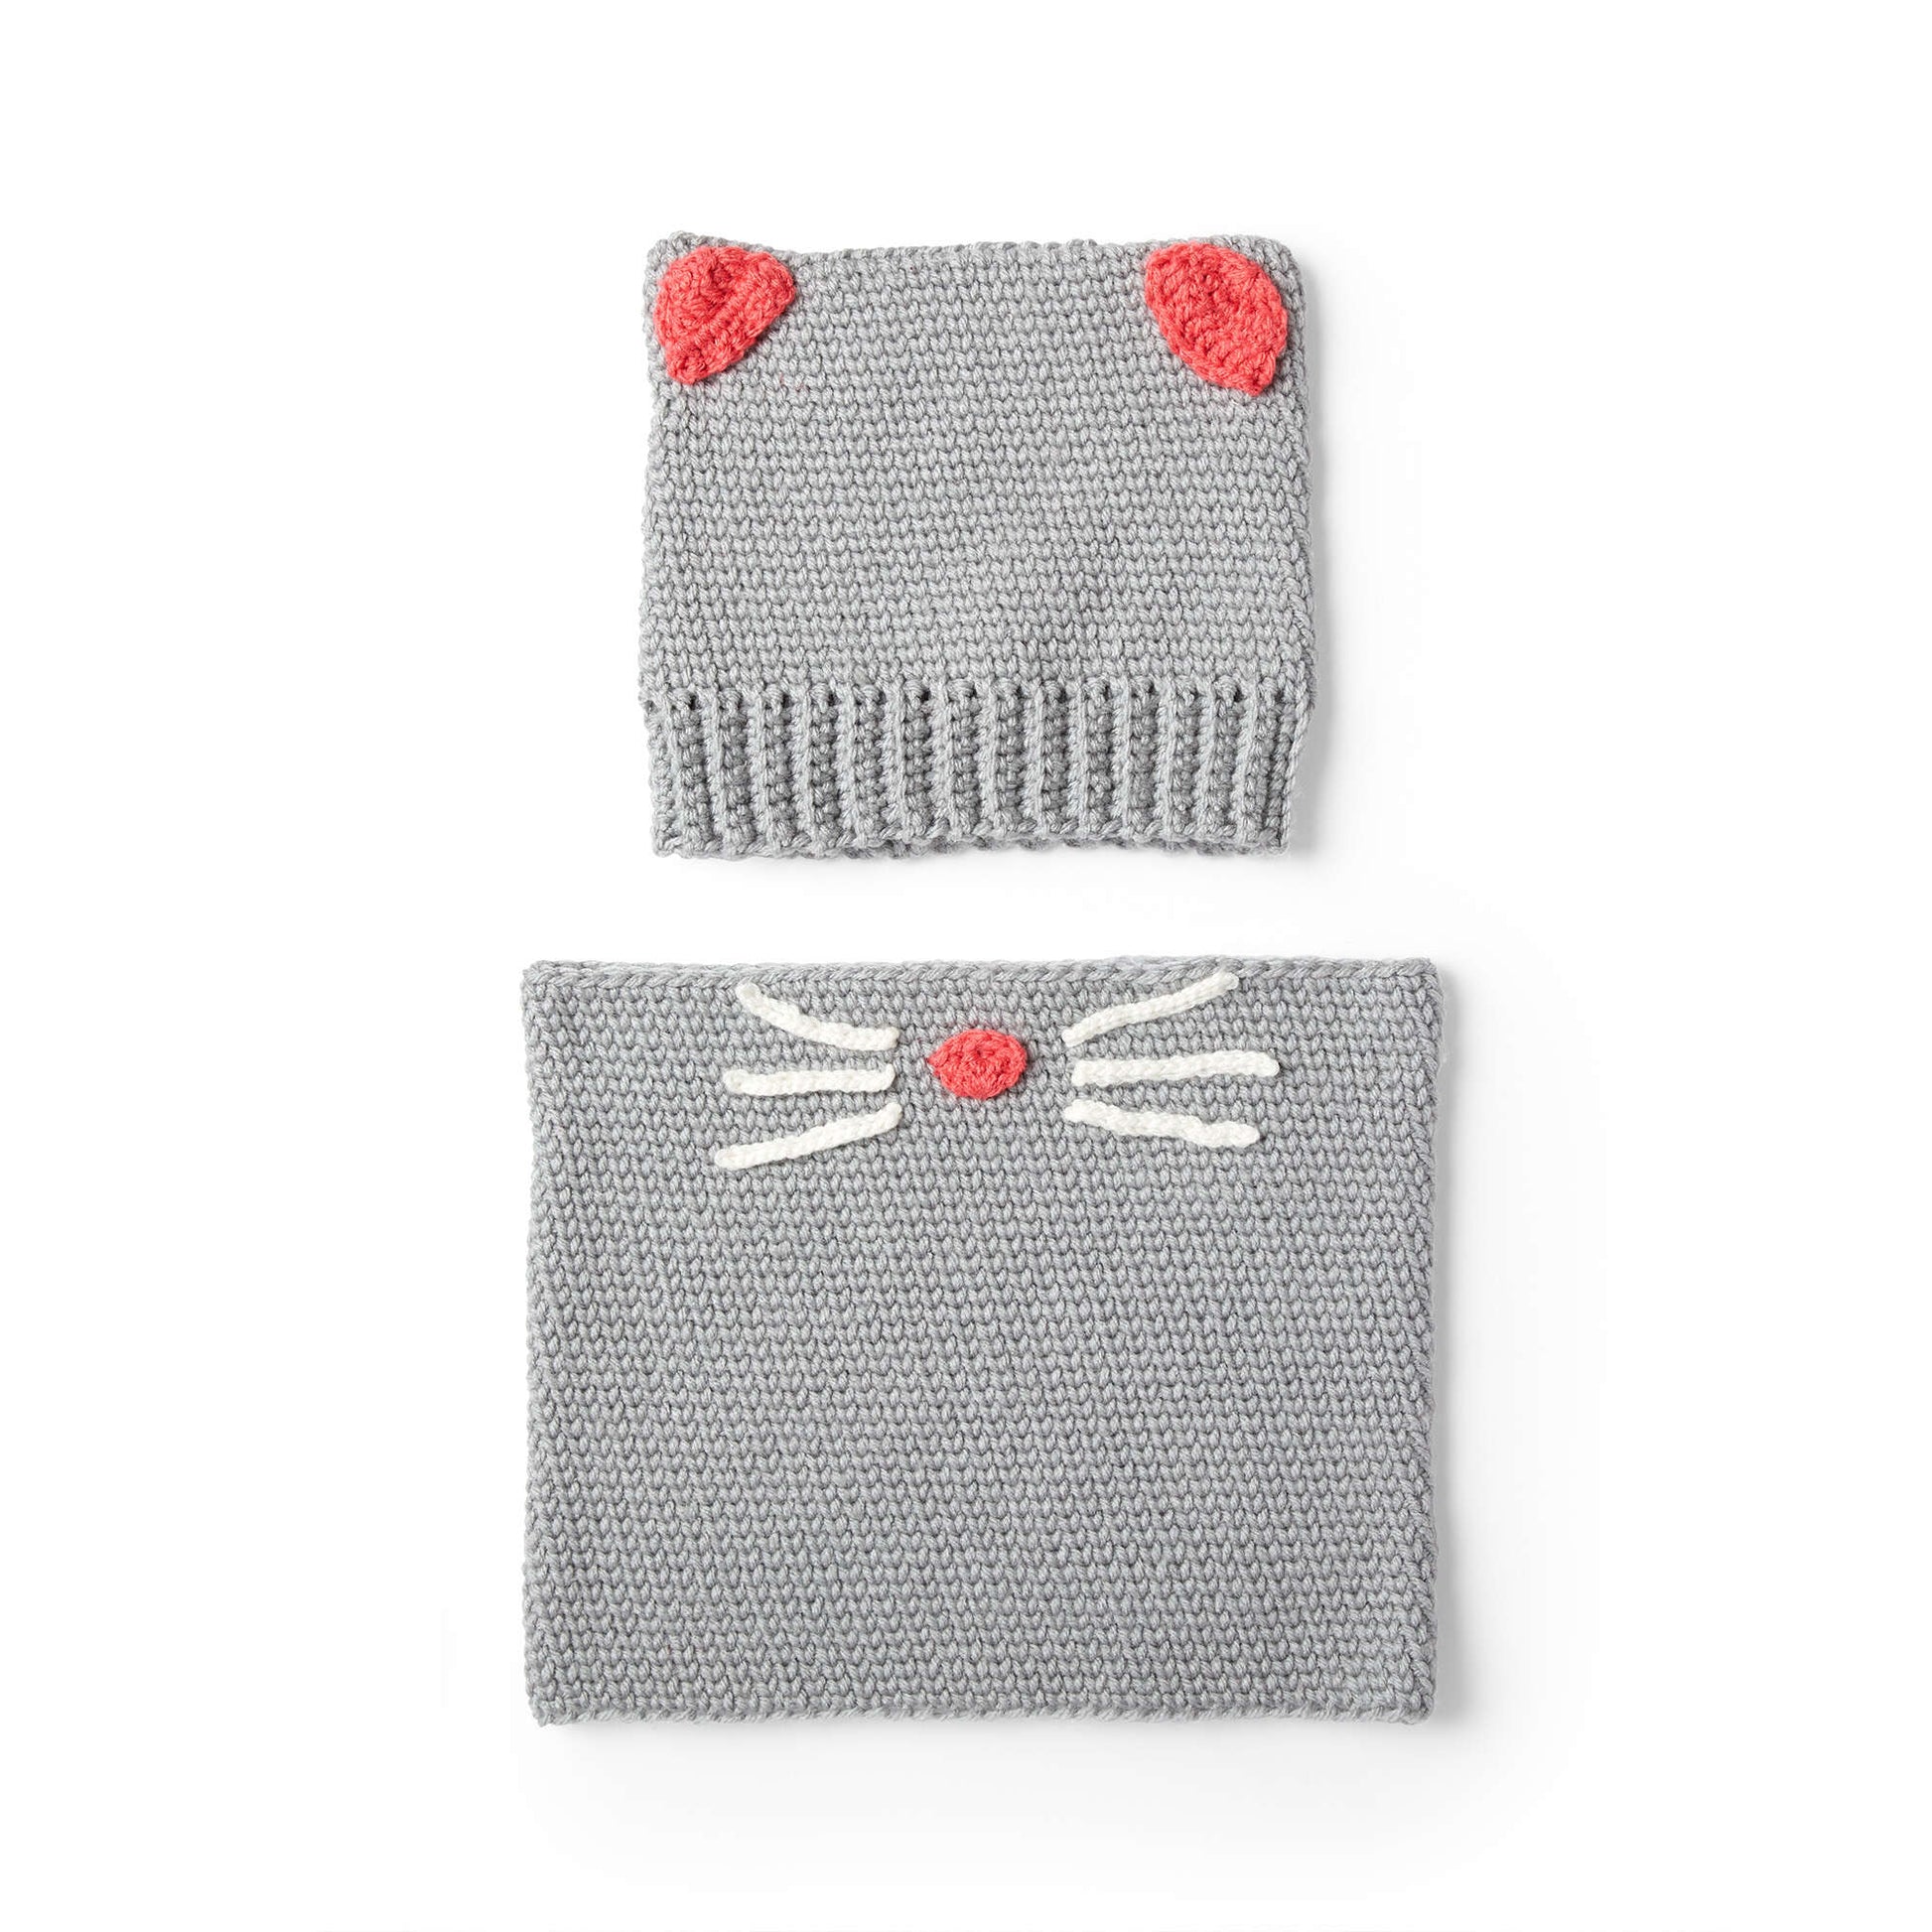 Free Red Heart Crochet Kitty Hat & Cowl Pattern